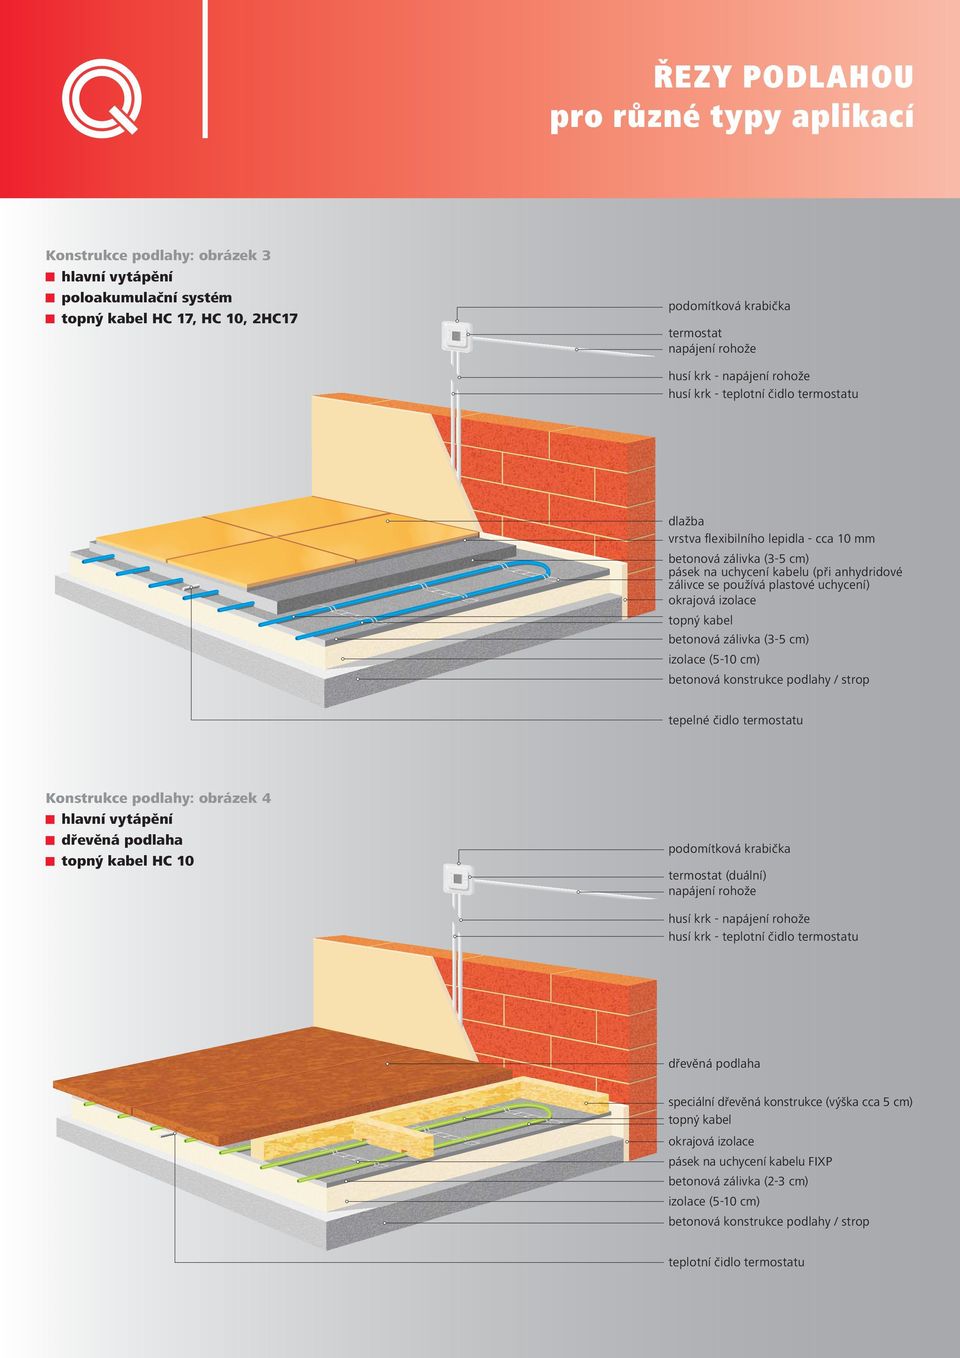 betonová zálivka (3-5 cm) izolace (5-10 cm) betonová konstrukce podlahy / strop tepelné čidlo termostatu Konstrukce podlahy: obrázek 4 hlavní vytápění dřevěná podlaha topný kabel HC 10 podomítková